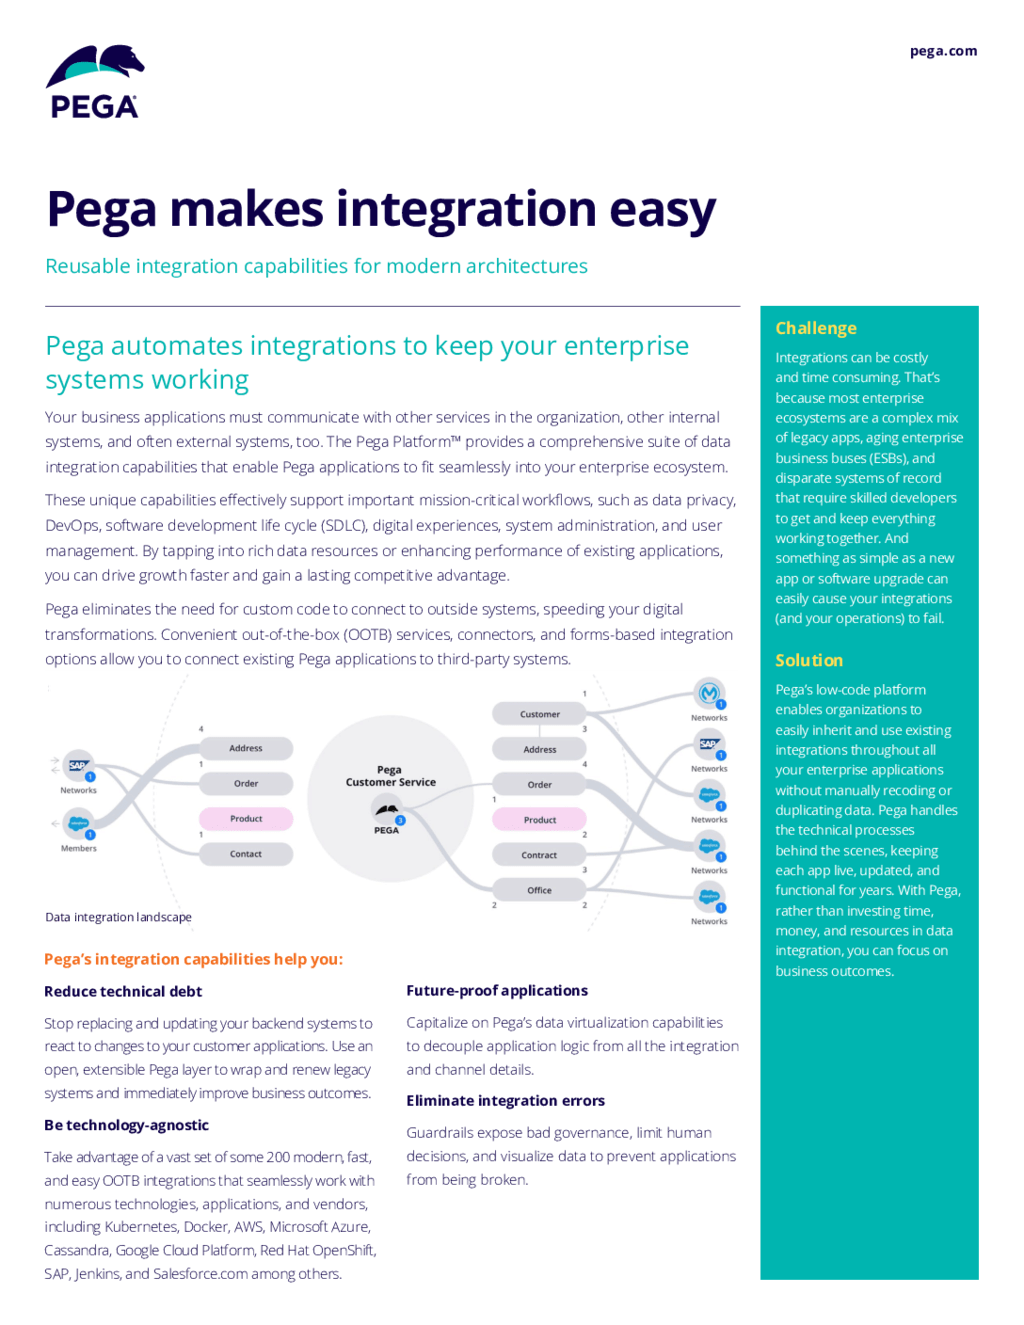 Pega makes integration easy